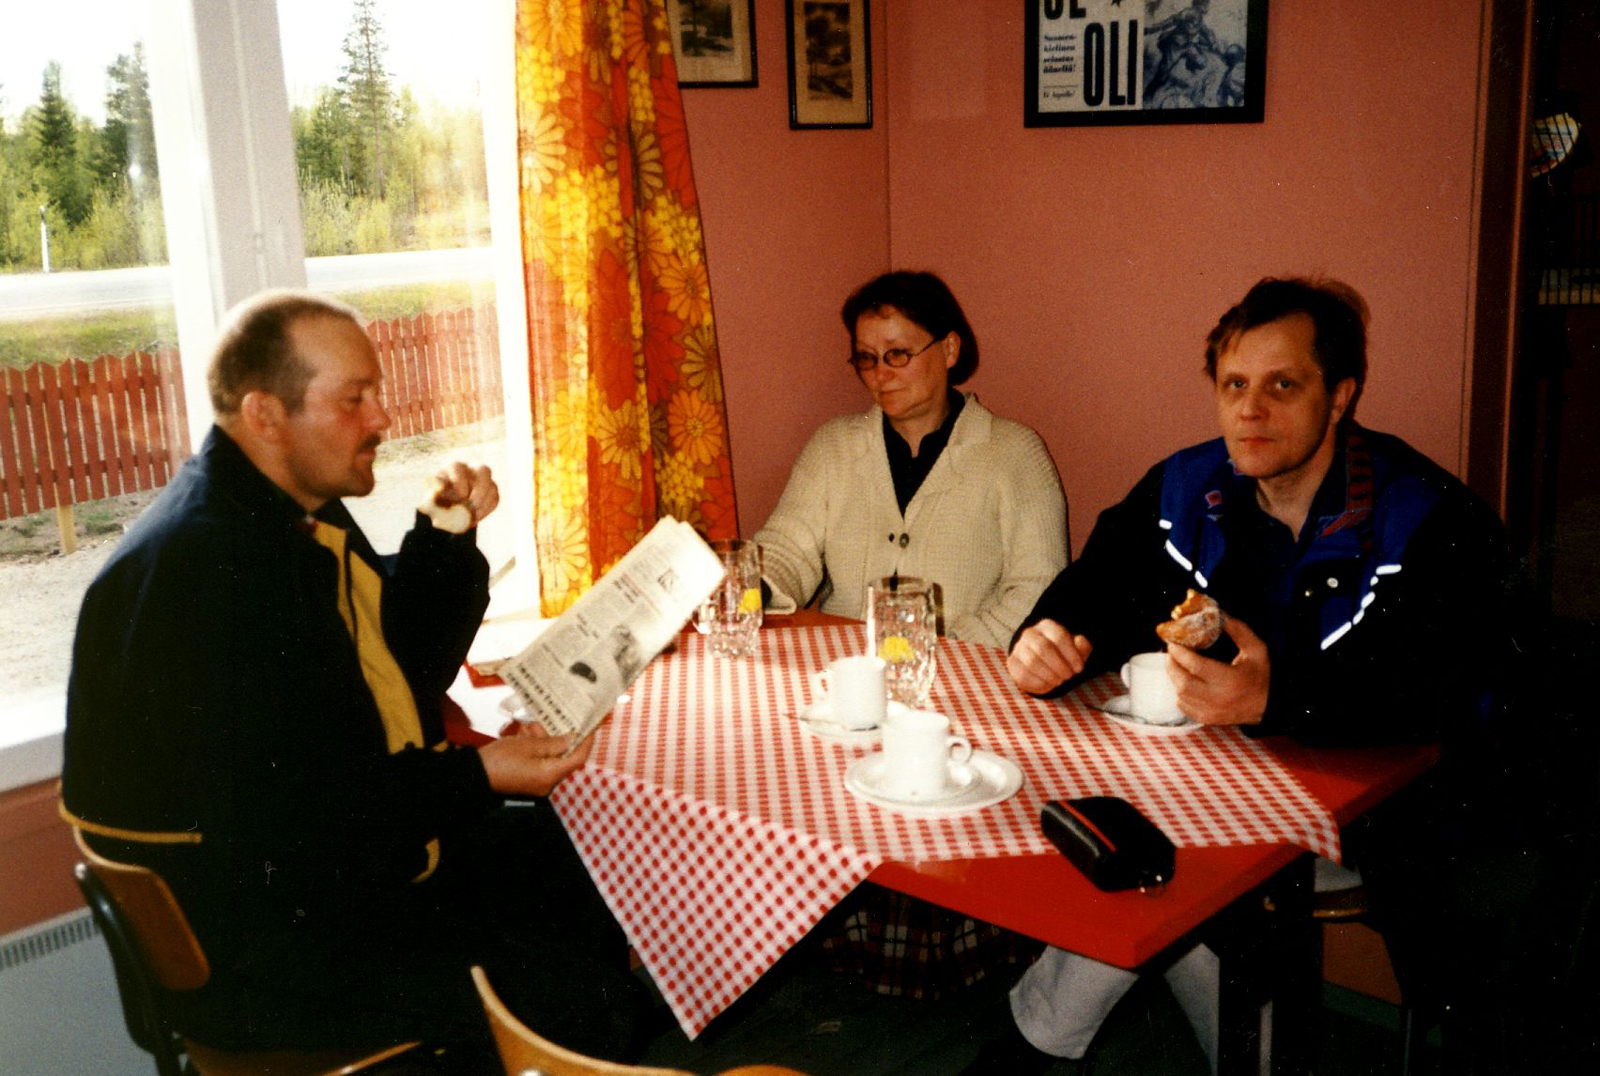 2003 Takkobaarissa - Tuija Sirviö-Lappalainen ja Kari Lappalainen seurana